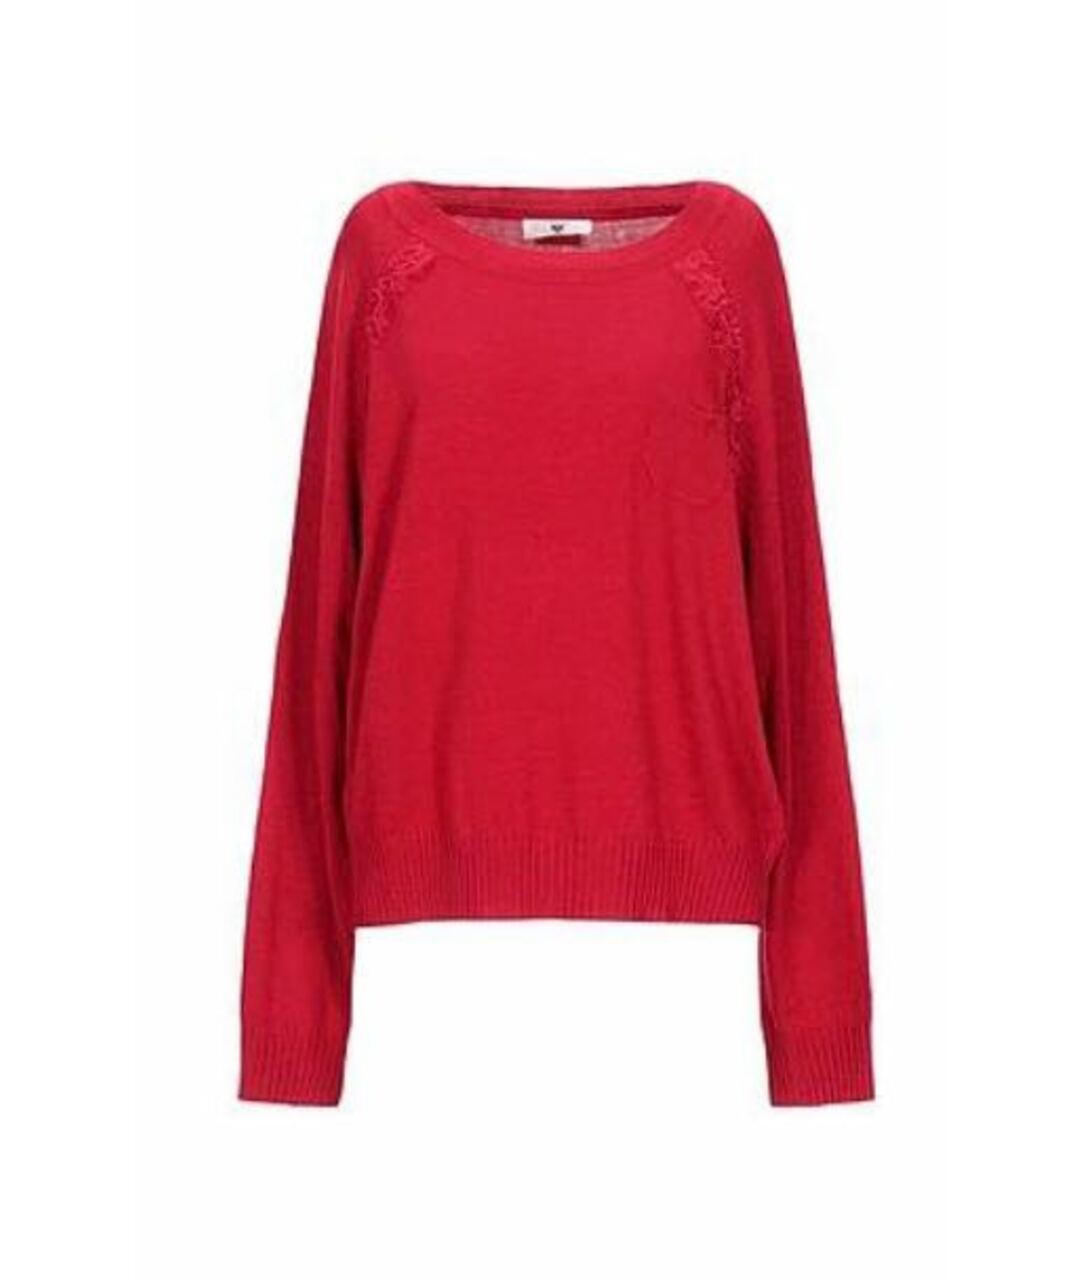 TWIN-SET Красный вискозный джемпер / свитер, фото 1